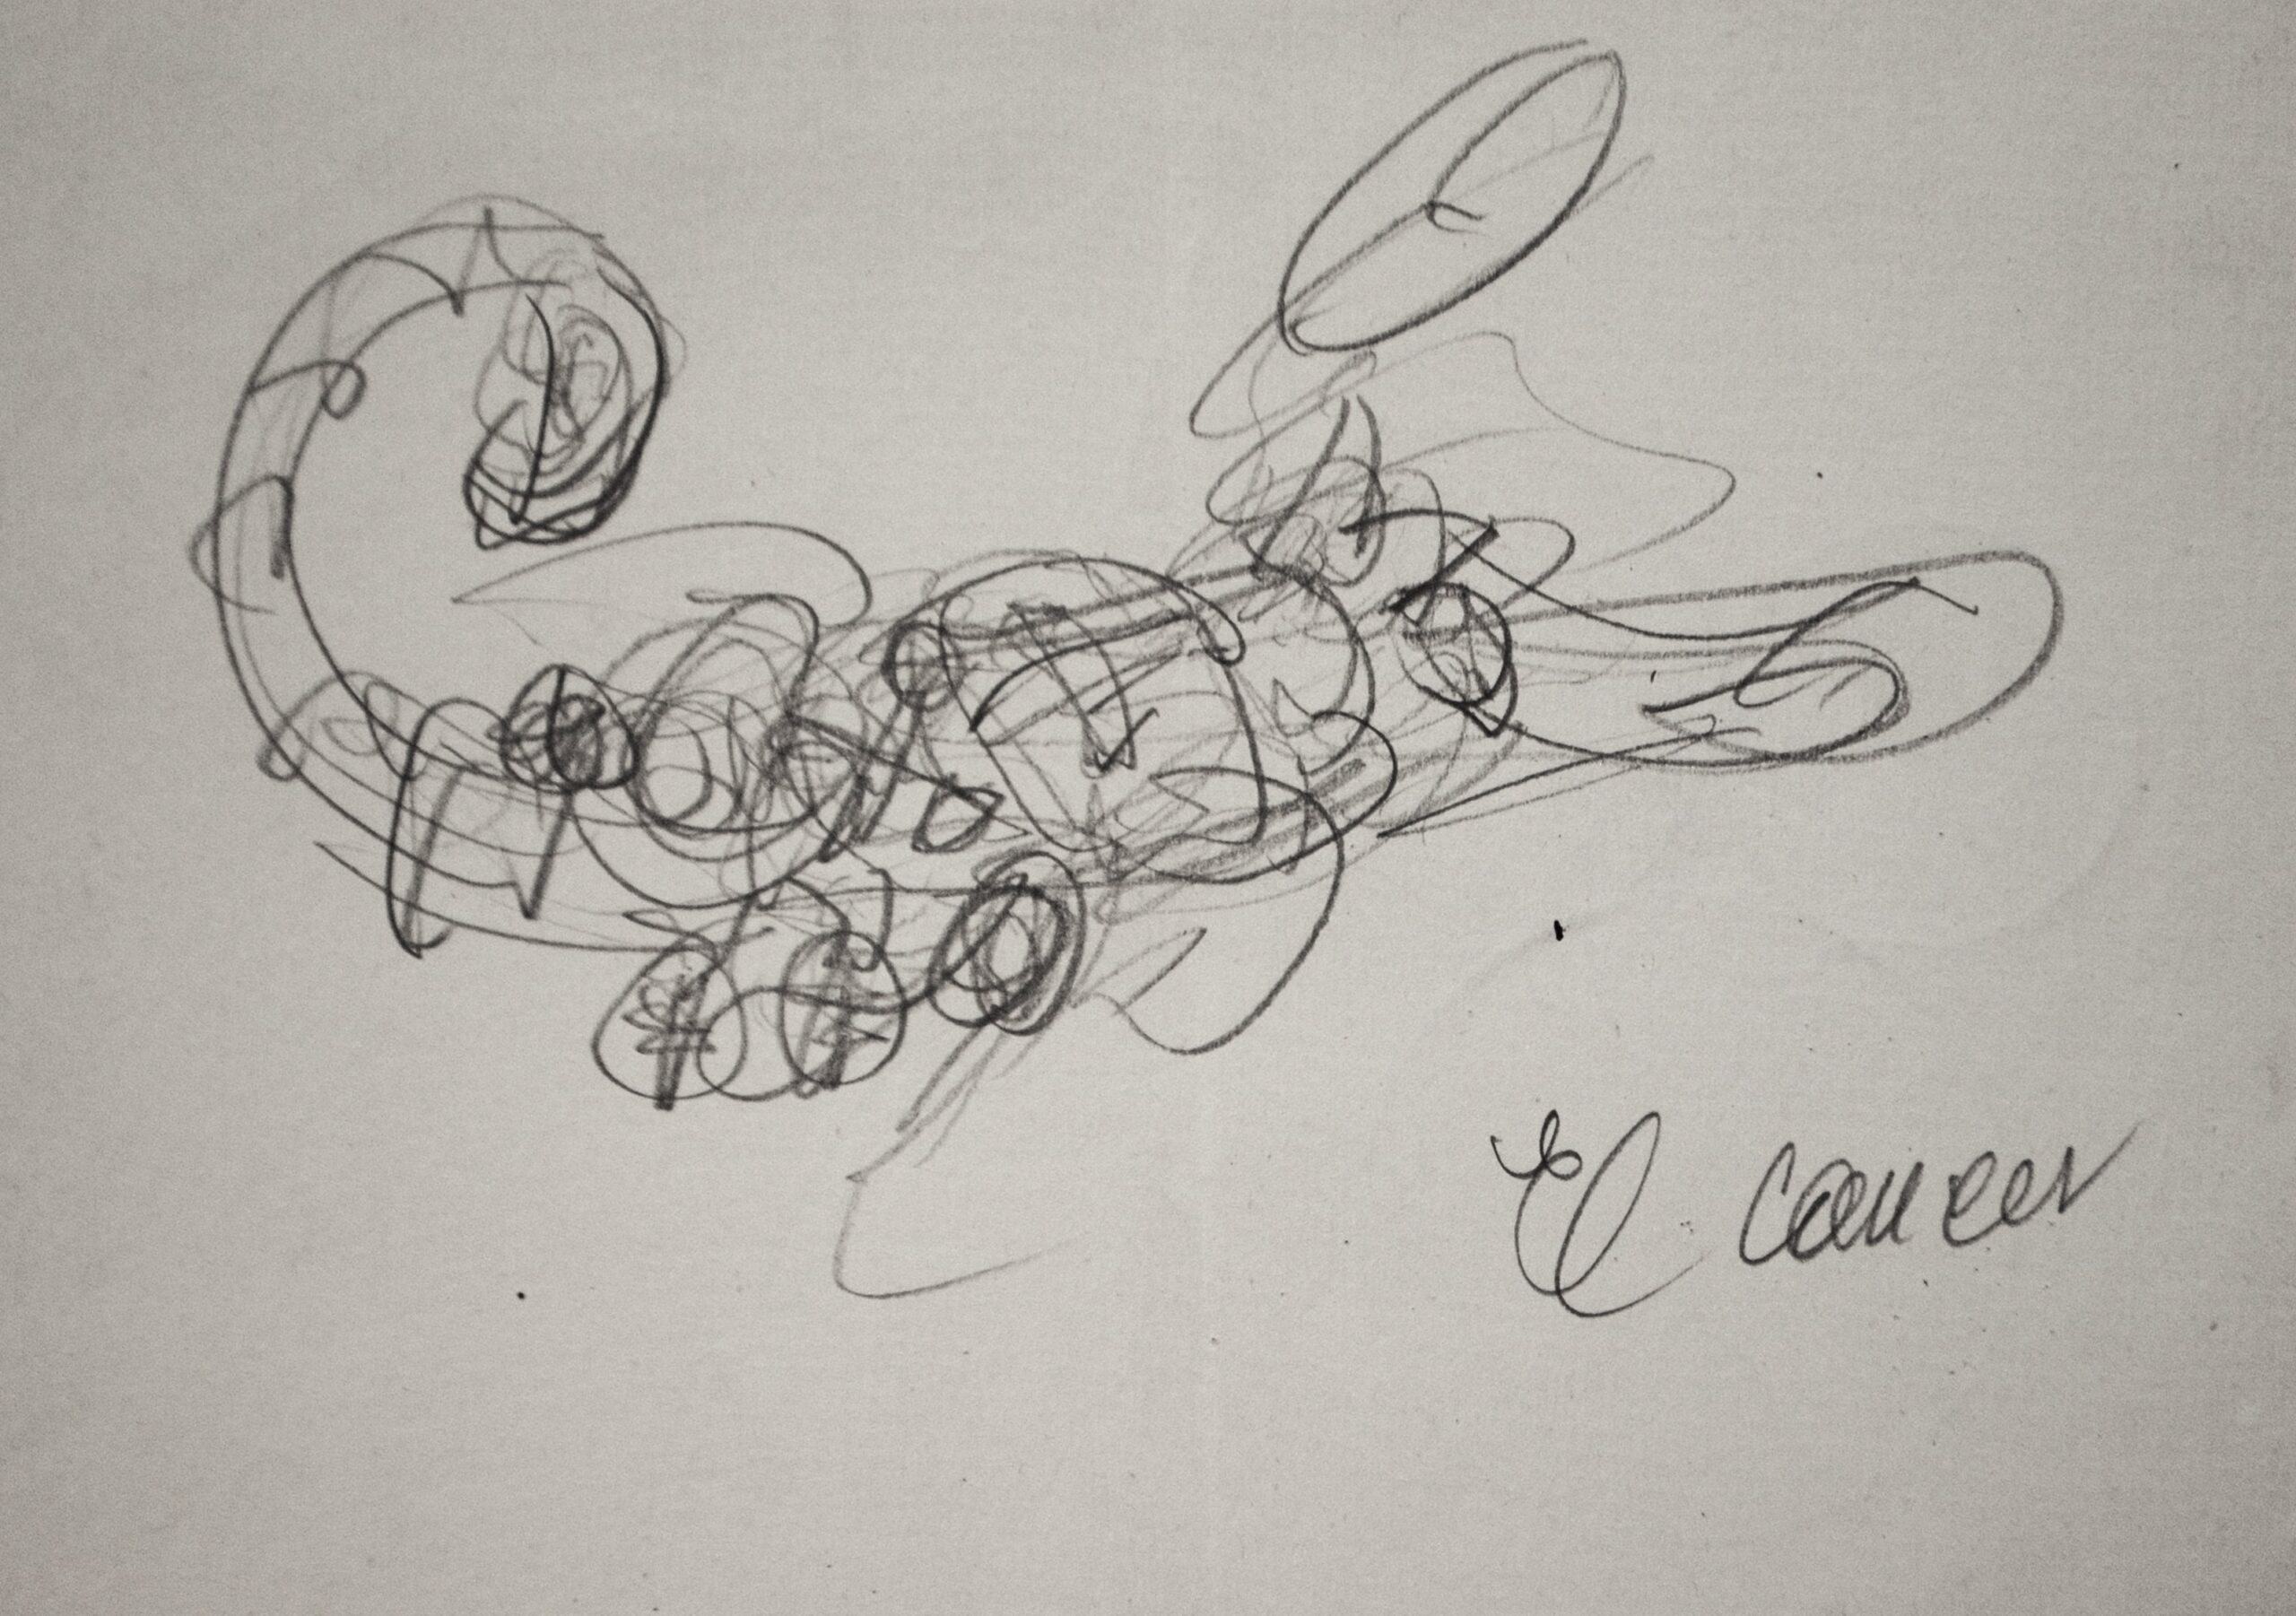 Dibujo de José Manaut. Escorpión, abajo a la derecha escito: El cáncer.